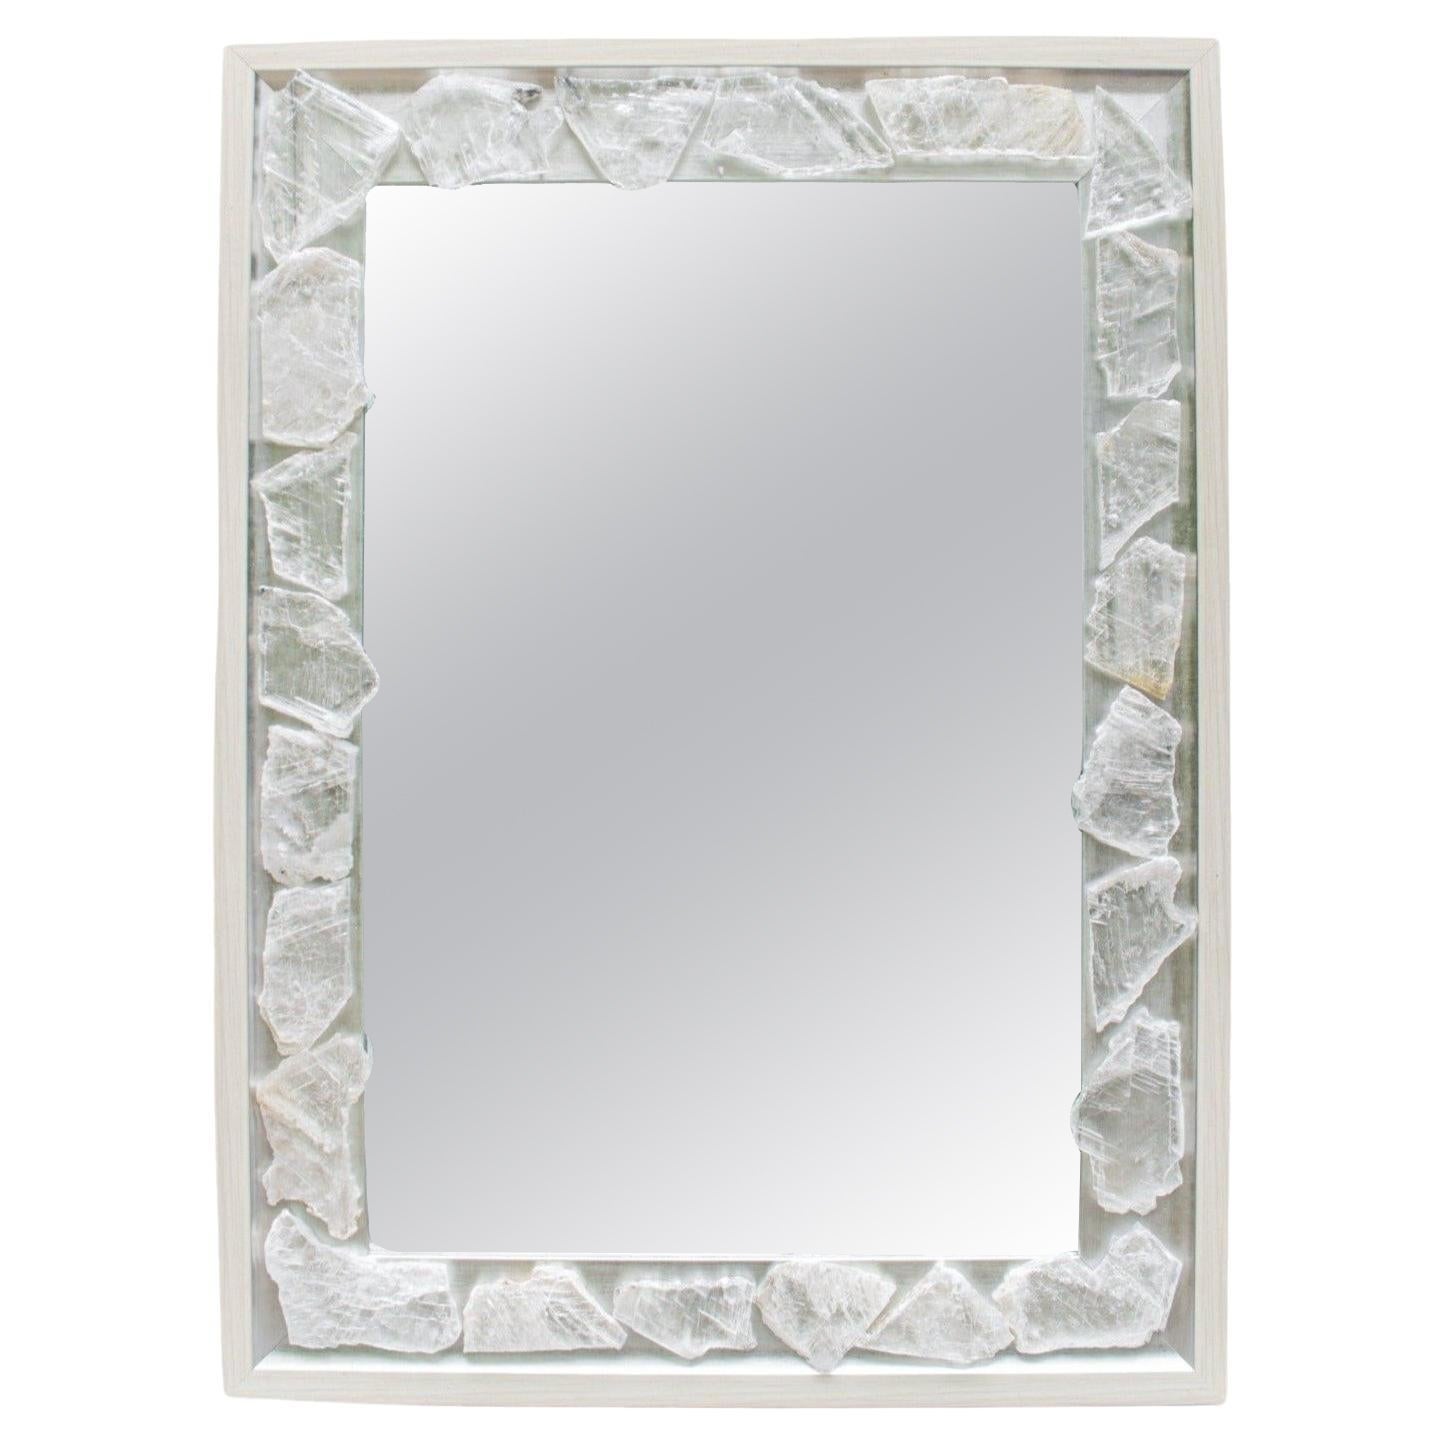 Selenit-Spiegel mit silbernem und cremefarbenem Rahmen von Interi